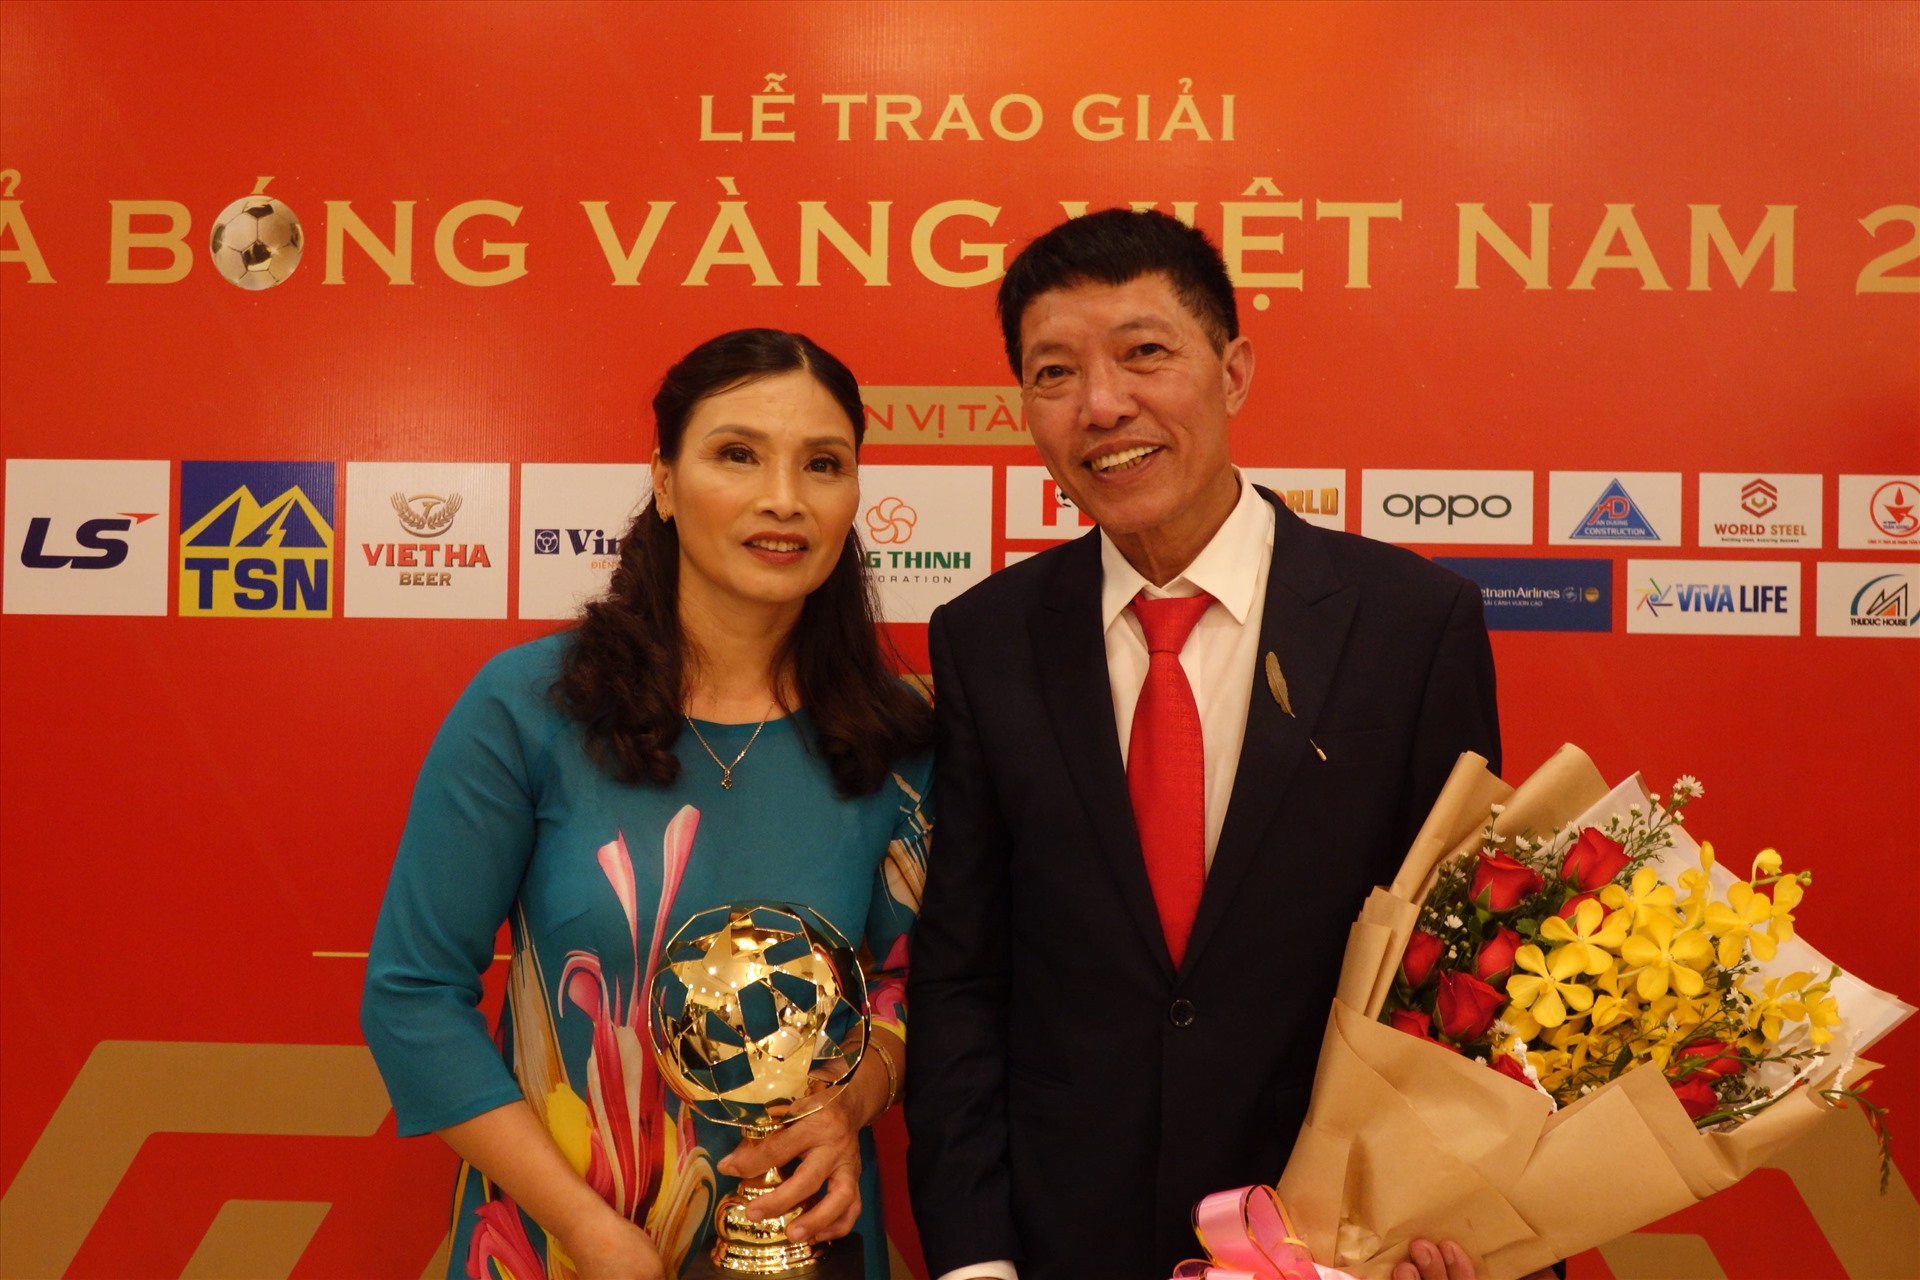 Bố mẹ Đoàn Văn Hậu thay mặt con trai nhận giải Cầu thủ trẻ nam hay nhất Việt Nam 2019. Ảnh: Nguyễn Đăng.